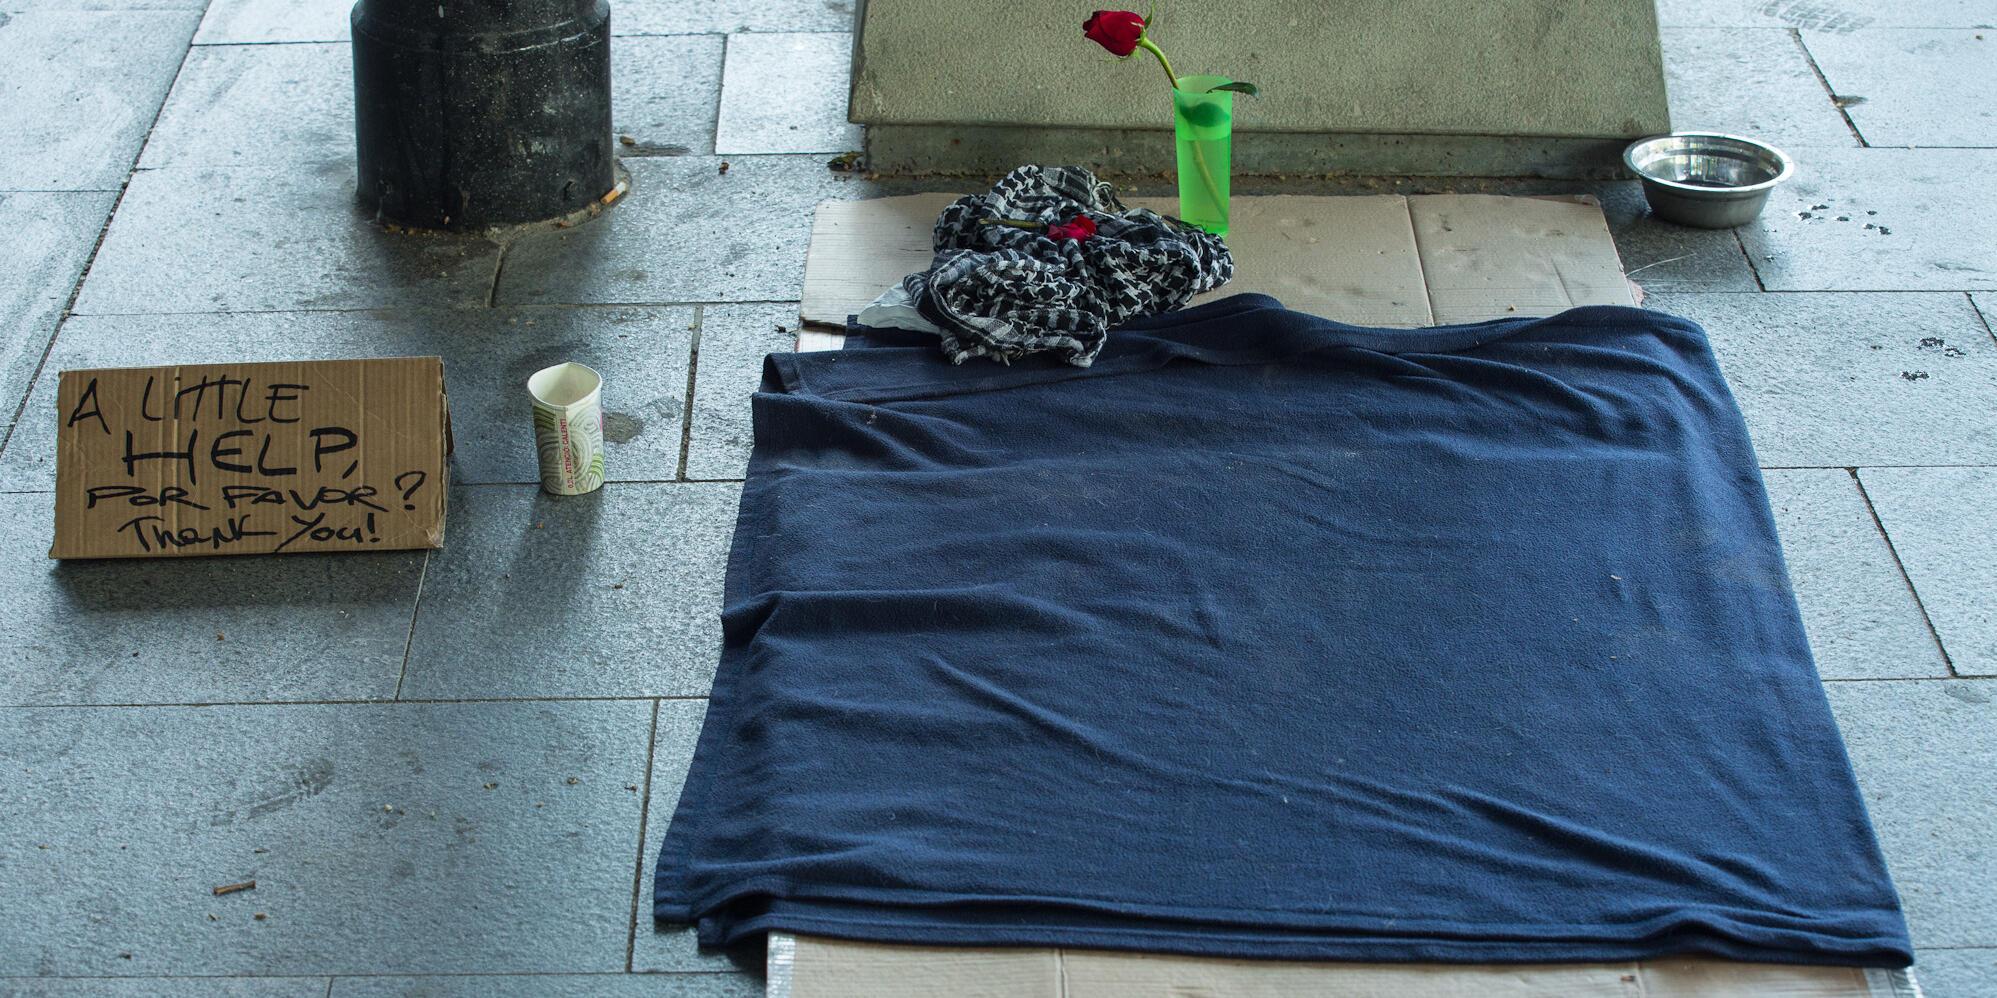 Imatge d'uns cartrons que serveixen d'aixopluc-llit per a una persona sense llar